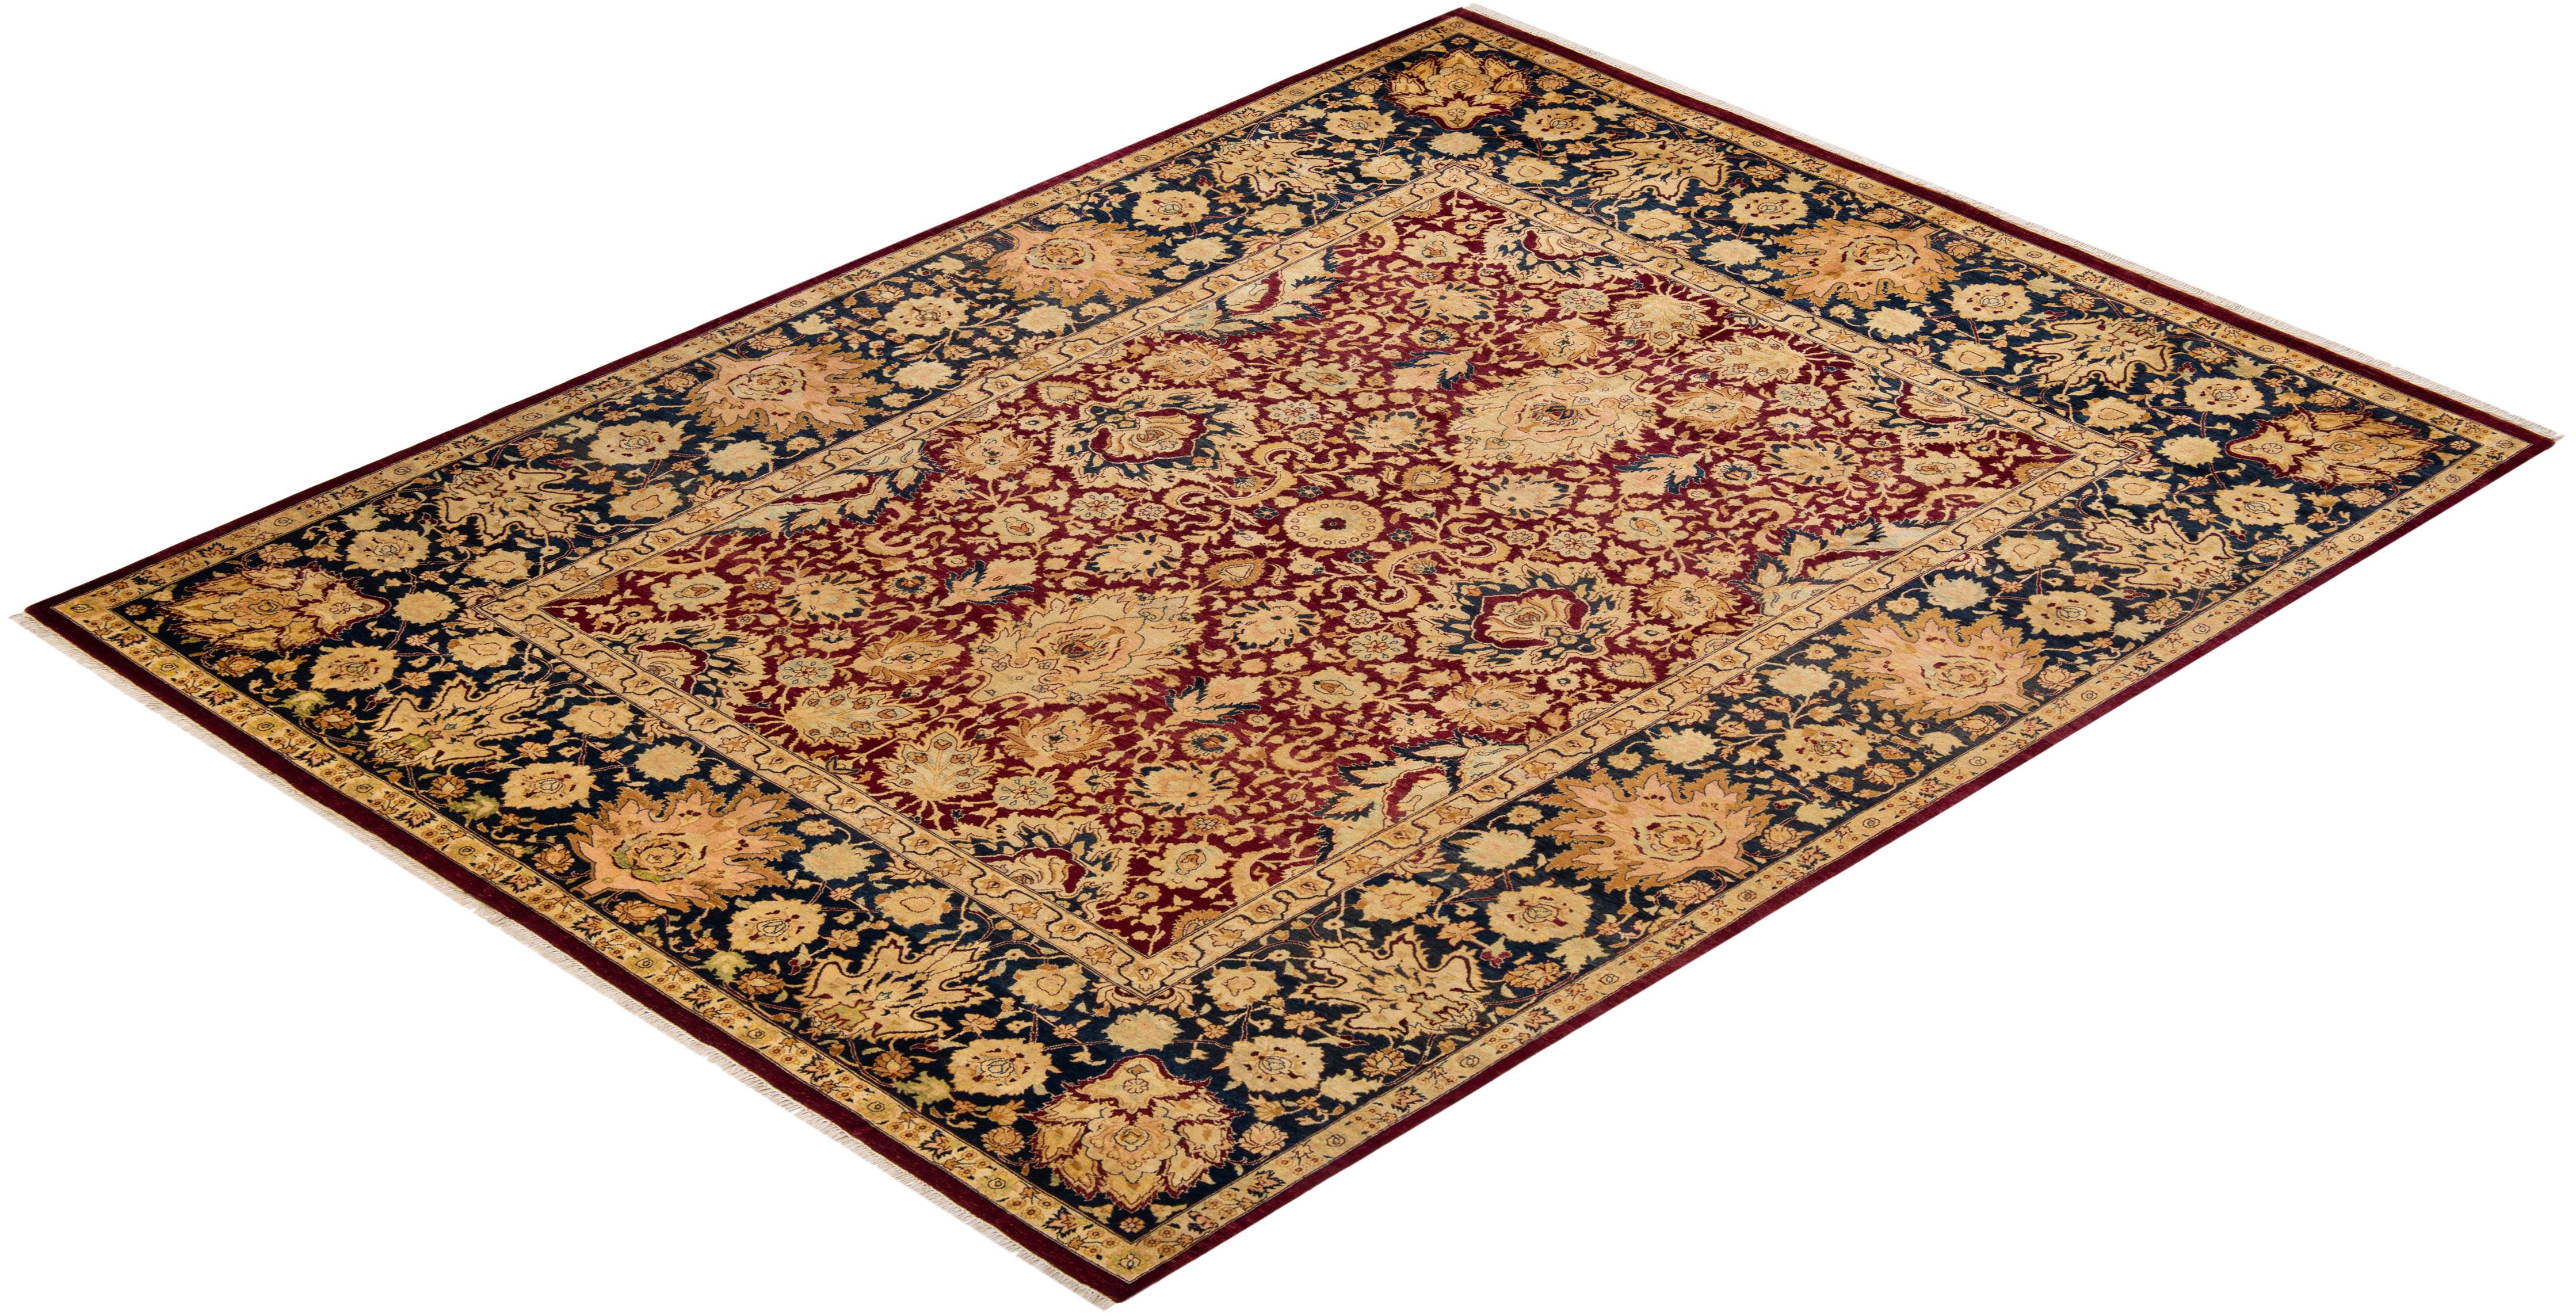 Die Teppiche der Mogul-Kollektion bringen mit ihren zurückhaltenden Farben und Allover-Mustern zeitlose Eleganz in jeden Raum. Beeinflusst von einem Spektrum türkischer, indischer und persischer Designs, lassen die Kunsthandwerker, die diese